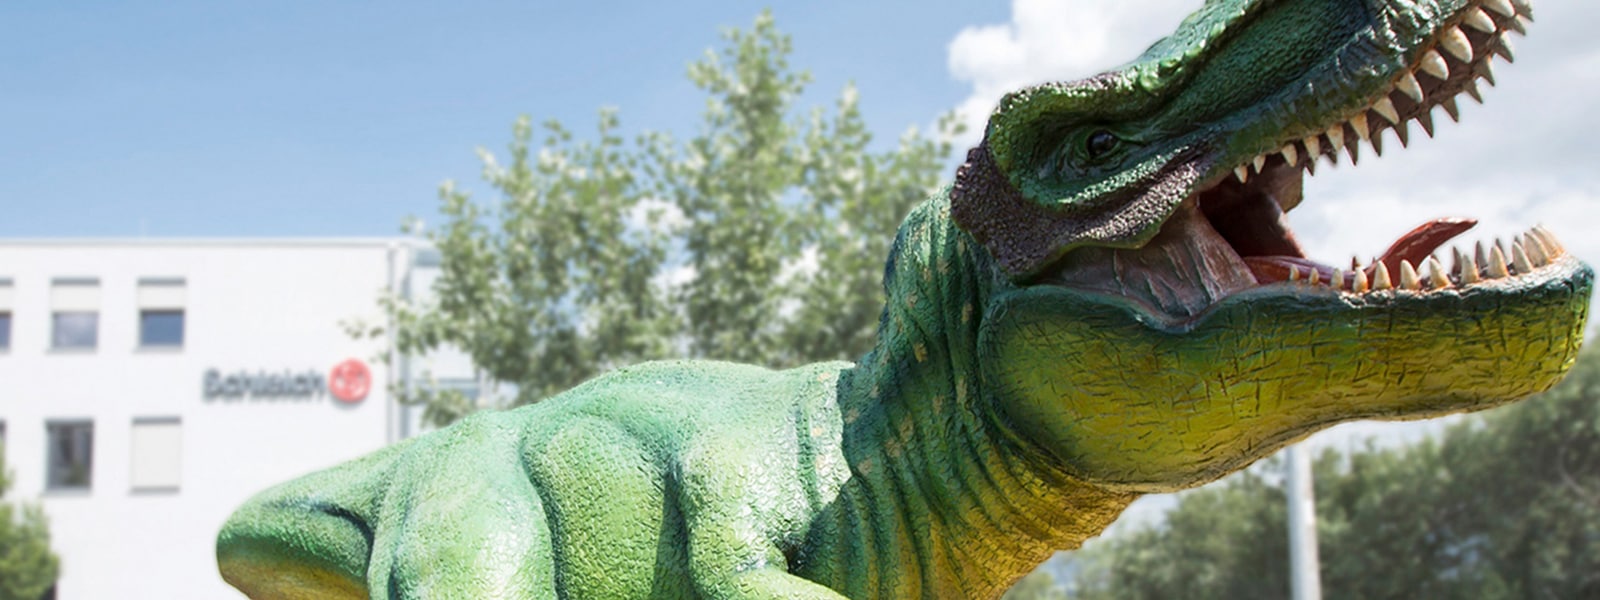 Das Bild zeigt eine Statue eines Tyrannosaurus Rex.